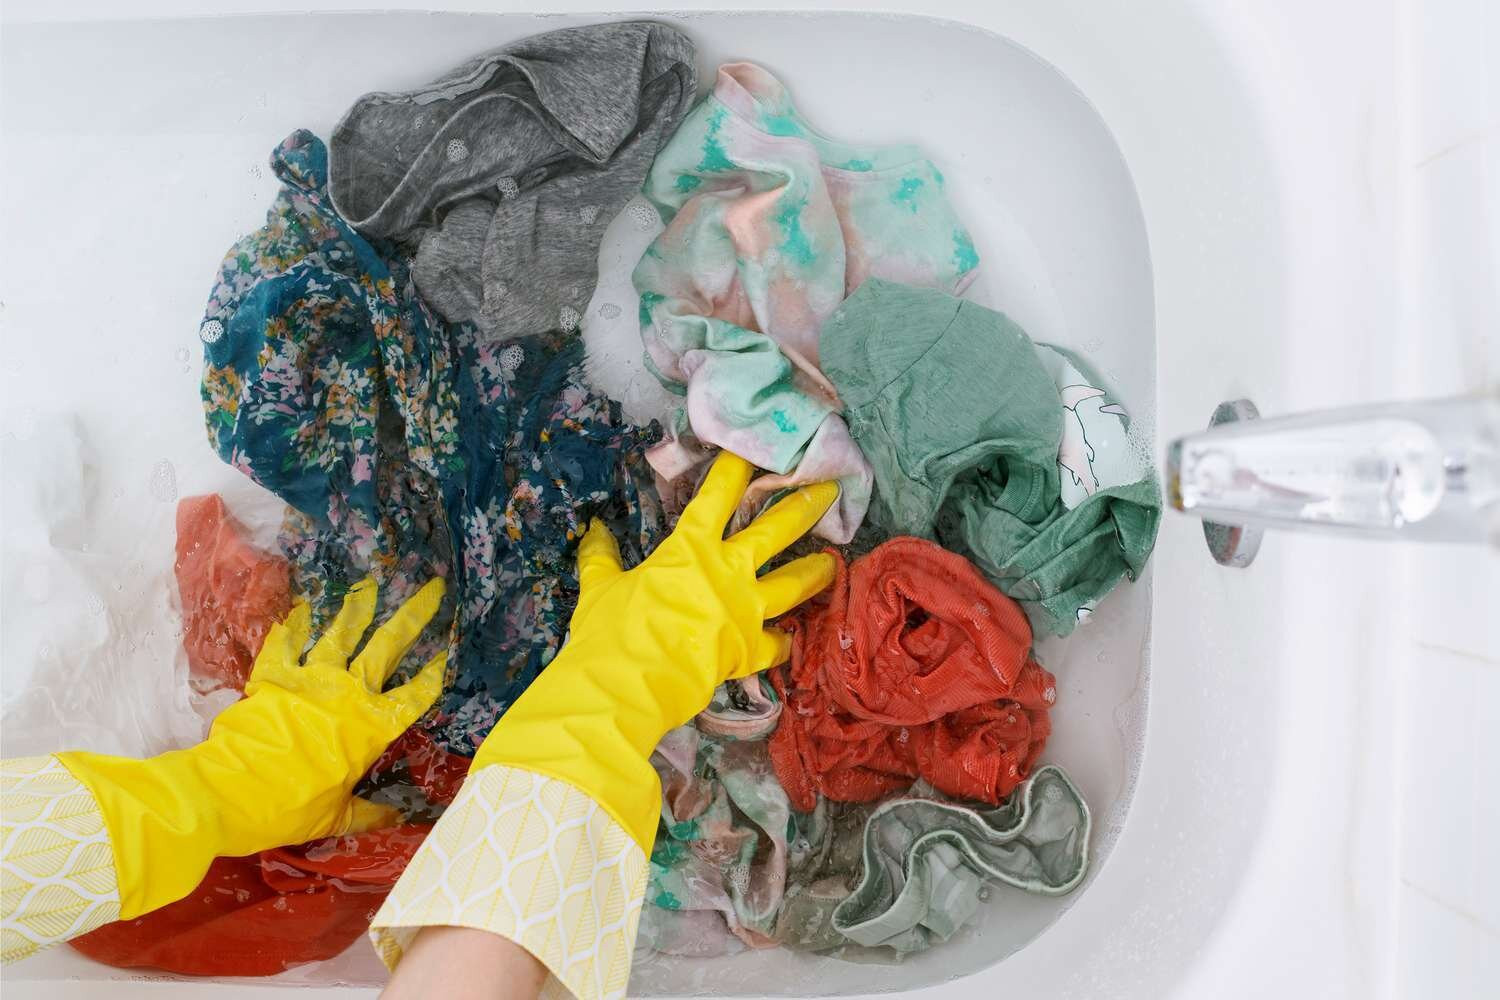 Ngâm quần áo quá lâu trước khi giặt sẽ gây mùi hôi khó chịu và khiến quần áo bị ẩm mốc, bạc màu, cũ kỹ. (Ảnh: The Spruce)